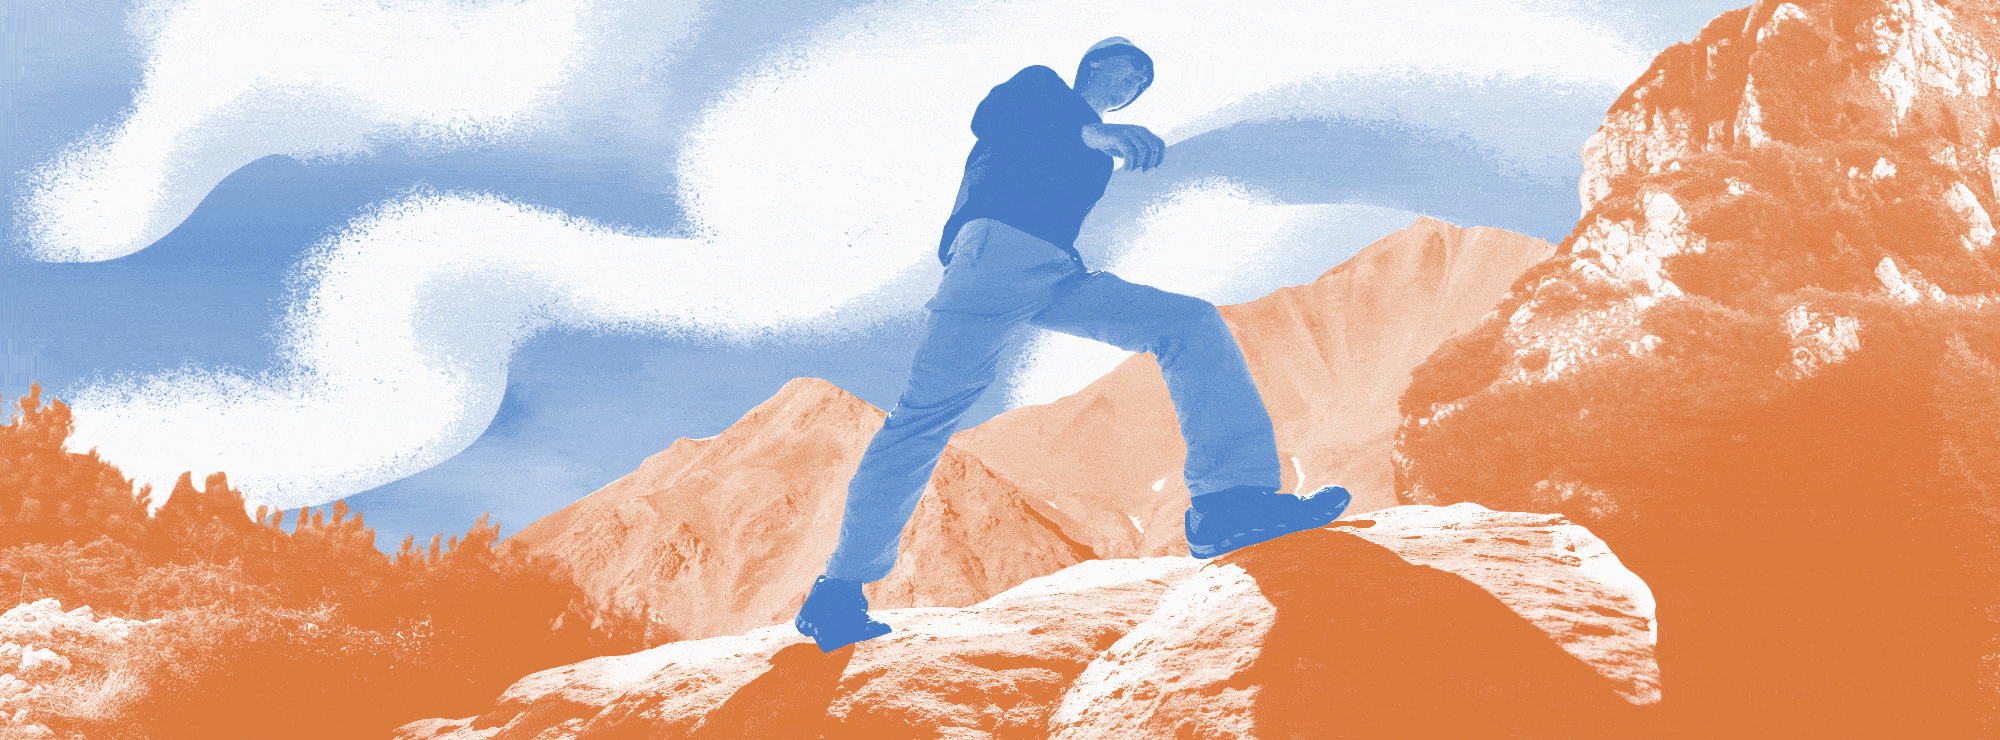 Полноразмерная обложка поста на тему: Тест: сможете ли вы пойти в первый горный поход?